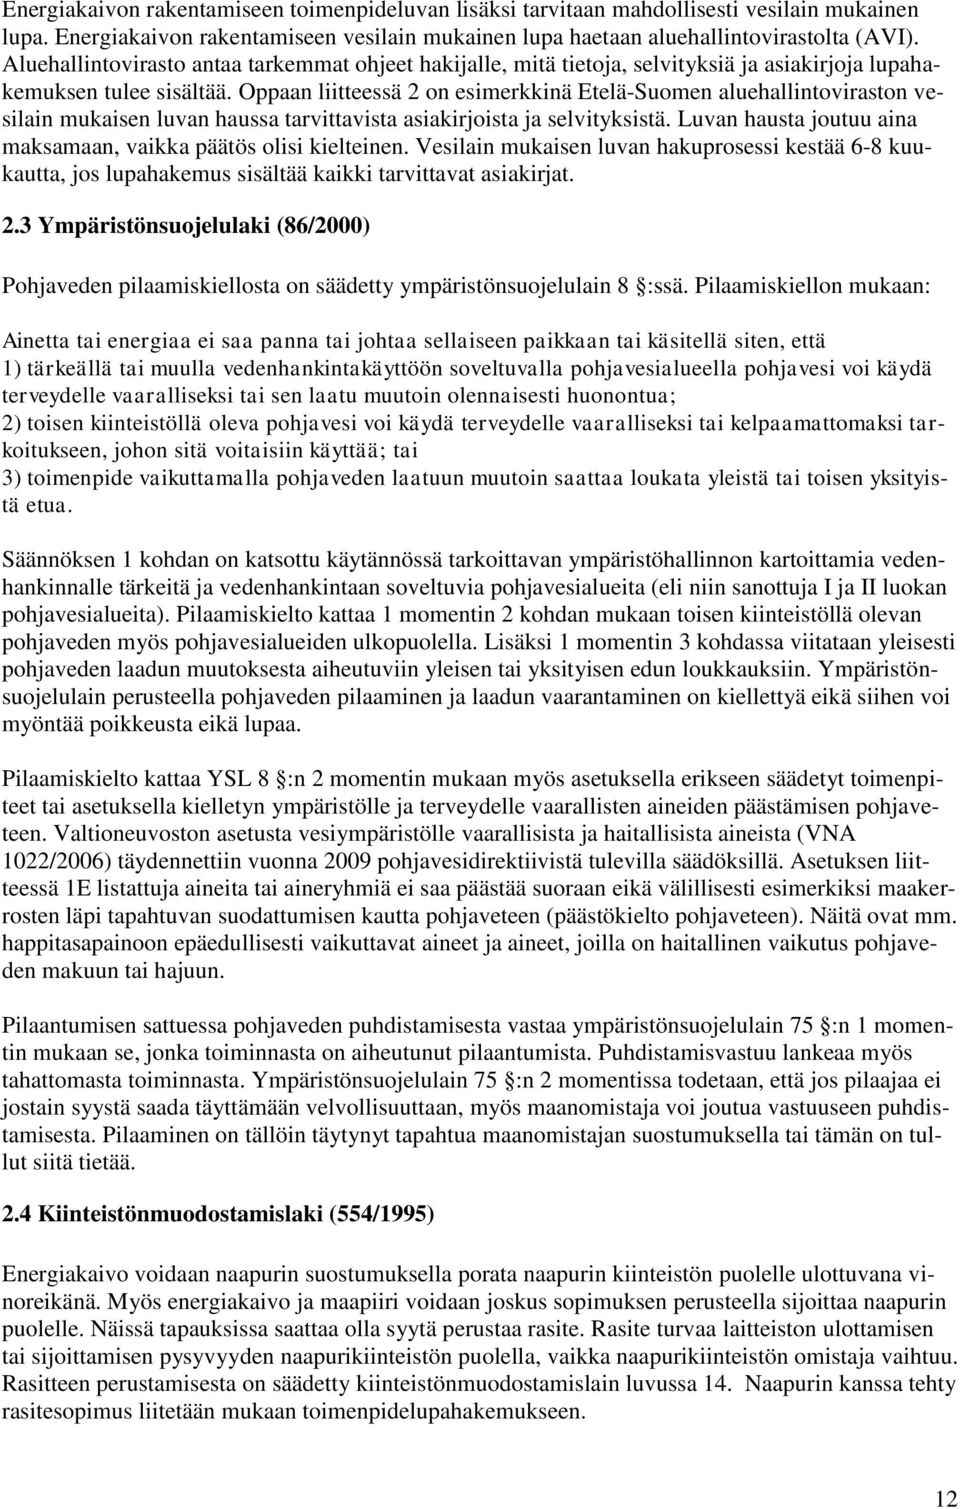 Oppaan liitteessä 2 on esimerkkinä Etelä-Suomen aluehallintoviraston vesilain mukaisen luvan haussa tarvittavista asiakirjoista ja selvityksistä.